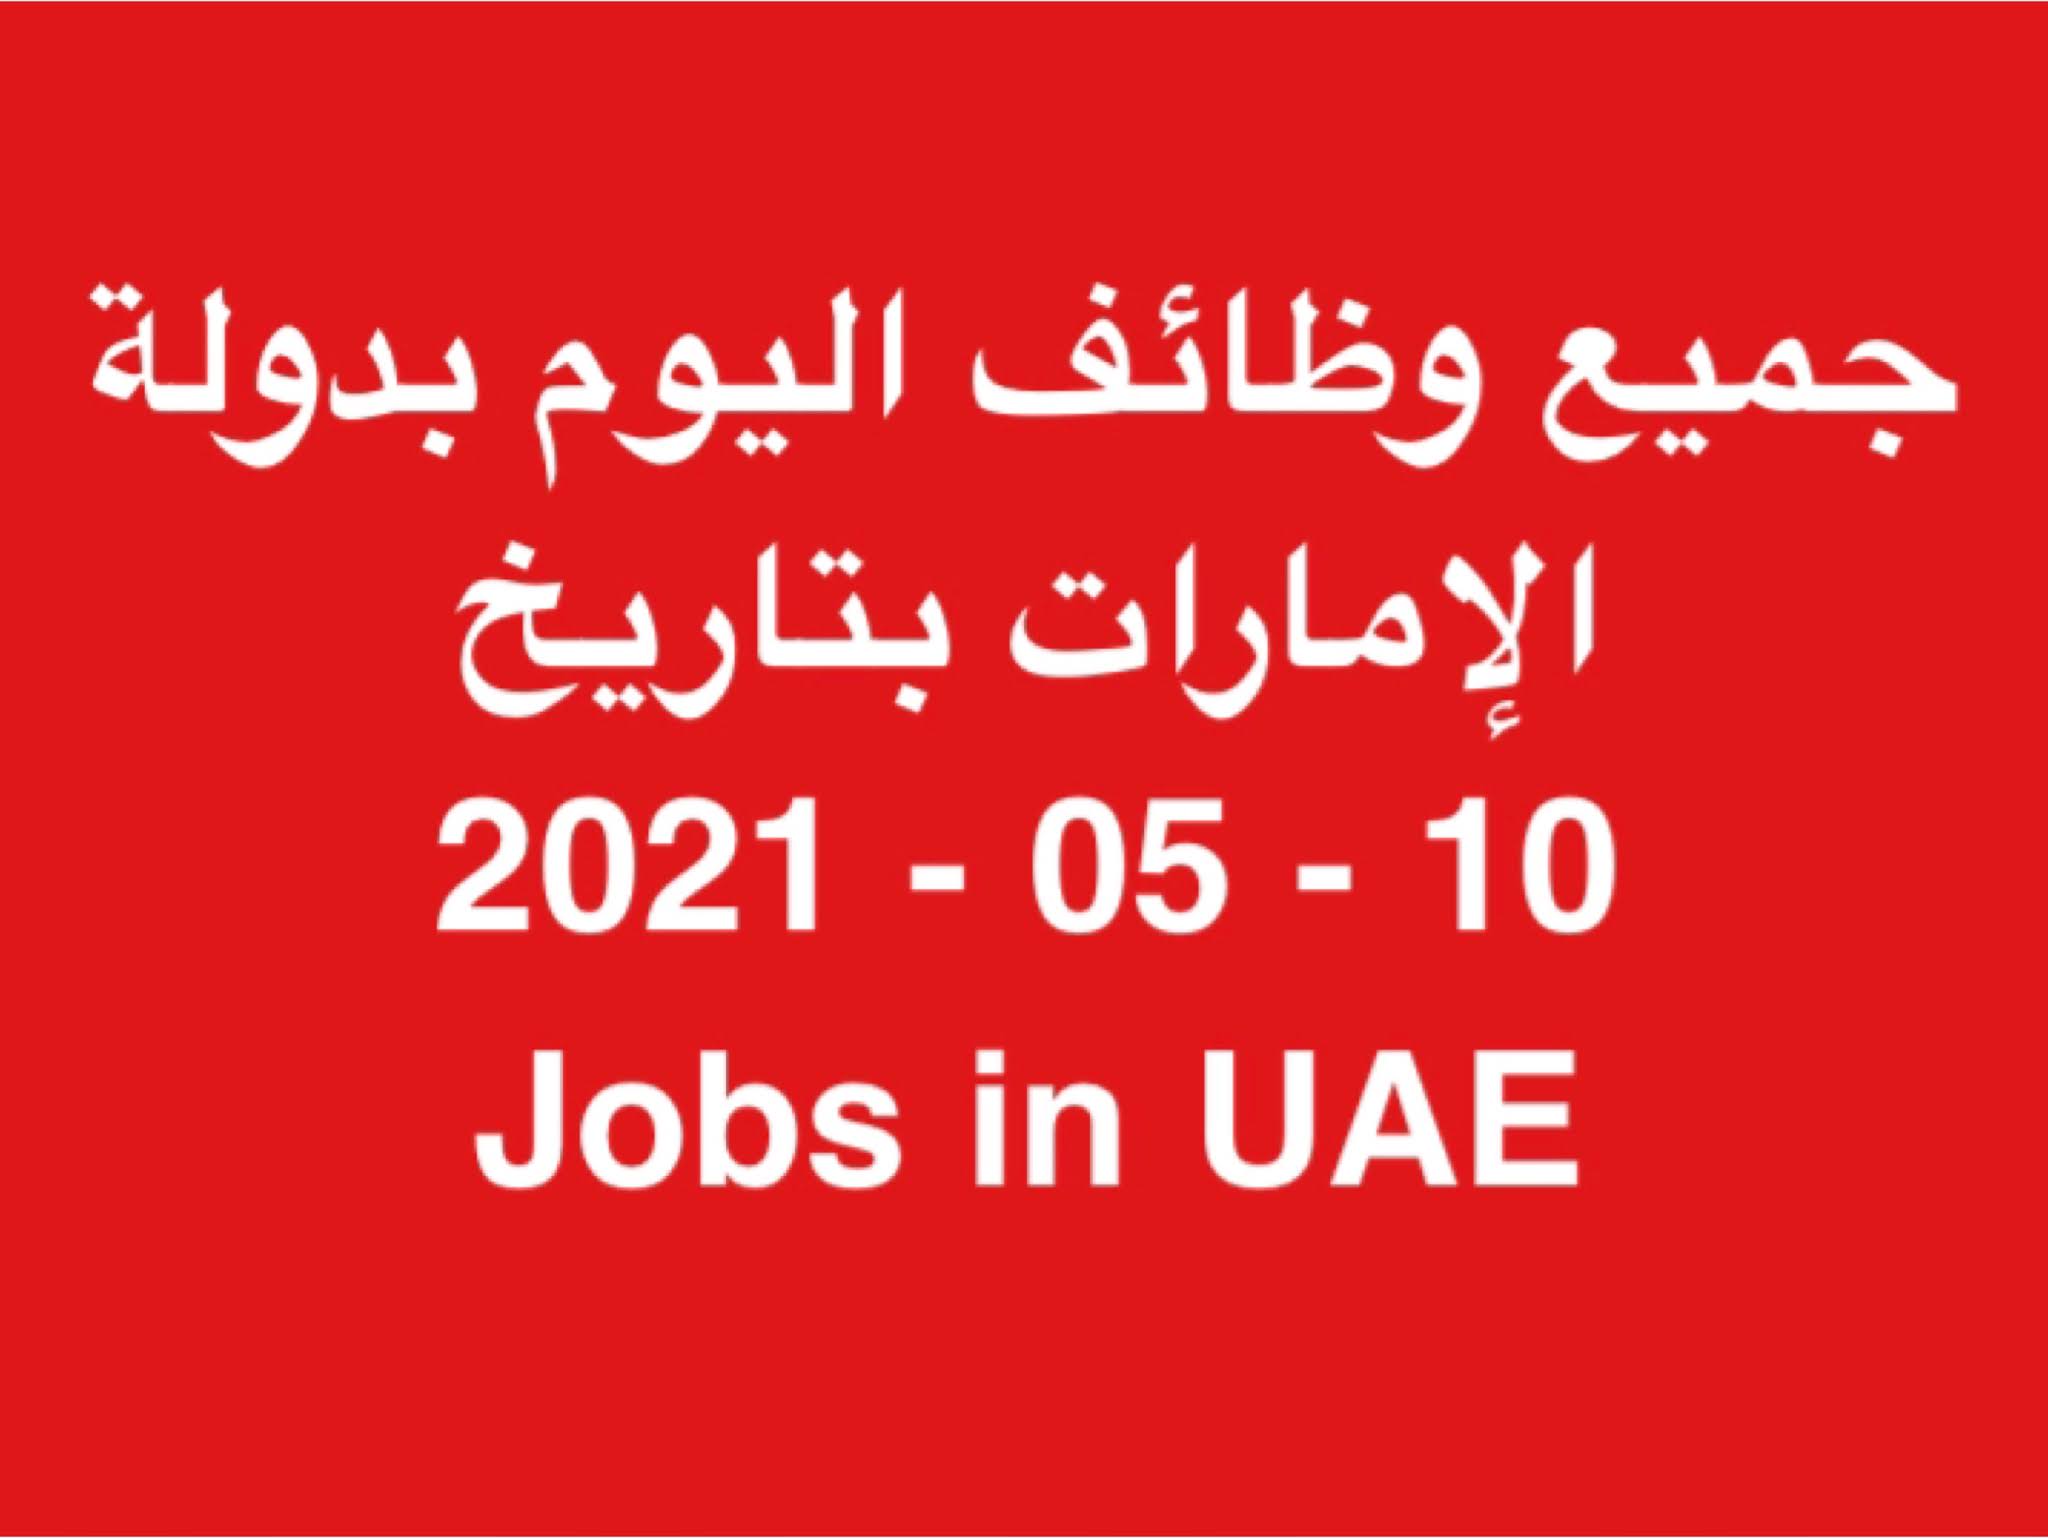 وظائف في الإمارات | JOBS IN UAE     وظائف مايو 2021 خالية وفرص عمل بالامارات وحصل على وظيفة الان في الامارات اليوم ( 10 مايو 2021 ) لجميع التخصصات يومي في دولة الامارات للمواطنين والمقيمين بالامارات بتاريخ 10-05-2021 الوظائف المعلنة في الشركات والمؤسسات والقطاعات الحكومية والخاصة بدولة الامارات بتاريخ (10 مايو 2021 ) لكلٍ من المواطنين والمقيمين بدولة الامارات .  الوظائف المتاحة بالامارات اليوم بتاريخ 10 مايو 2021